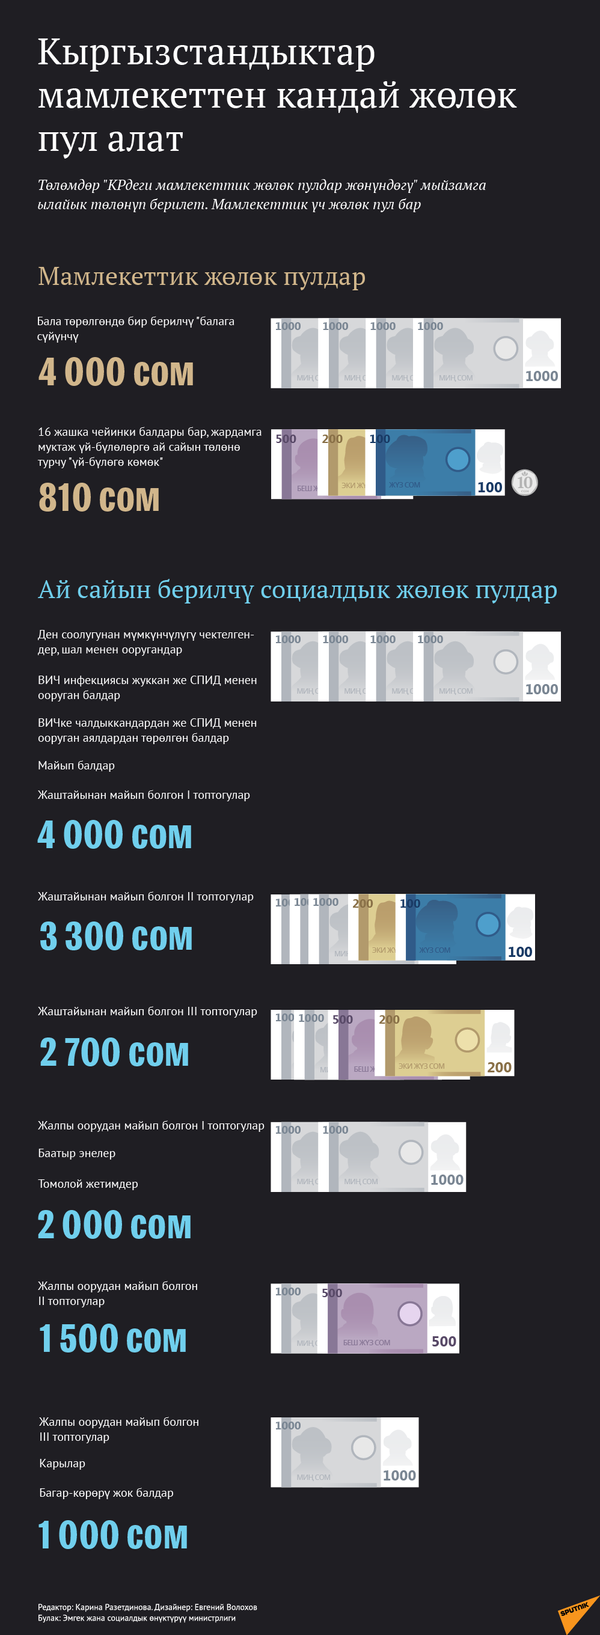 Билбей калбаңыз! Мамлекет сизге бере турган акча каражаты - инфографика - Sputnik Кыргызстан